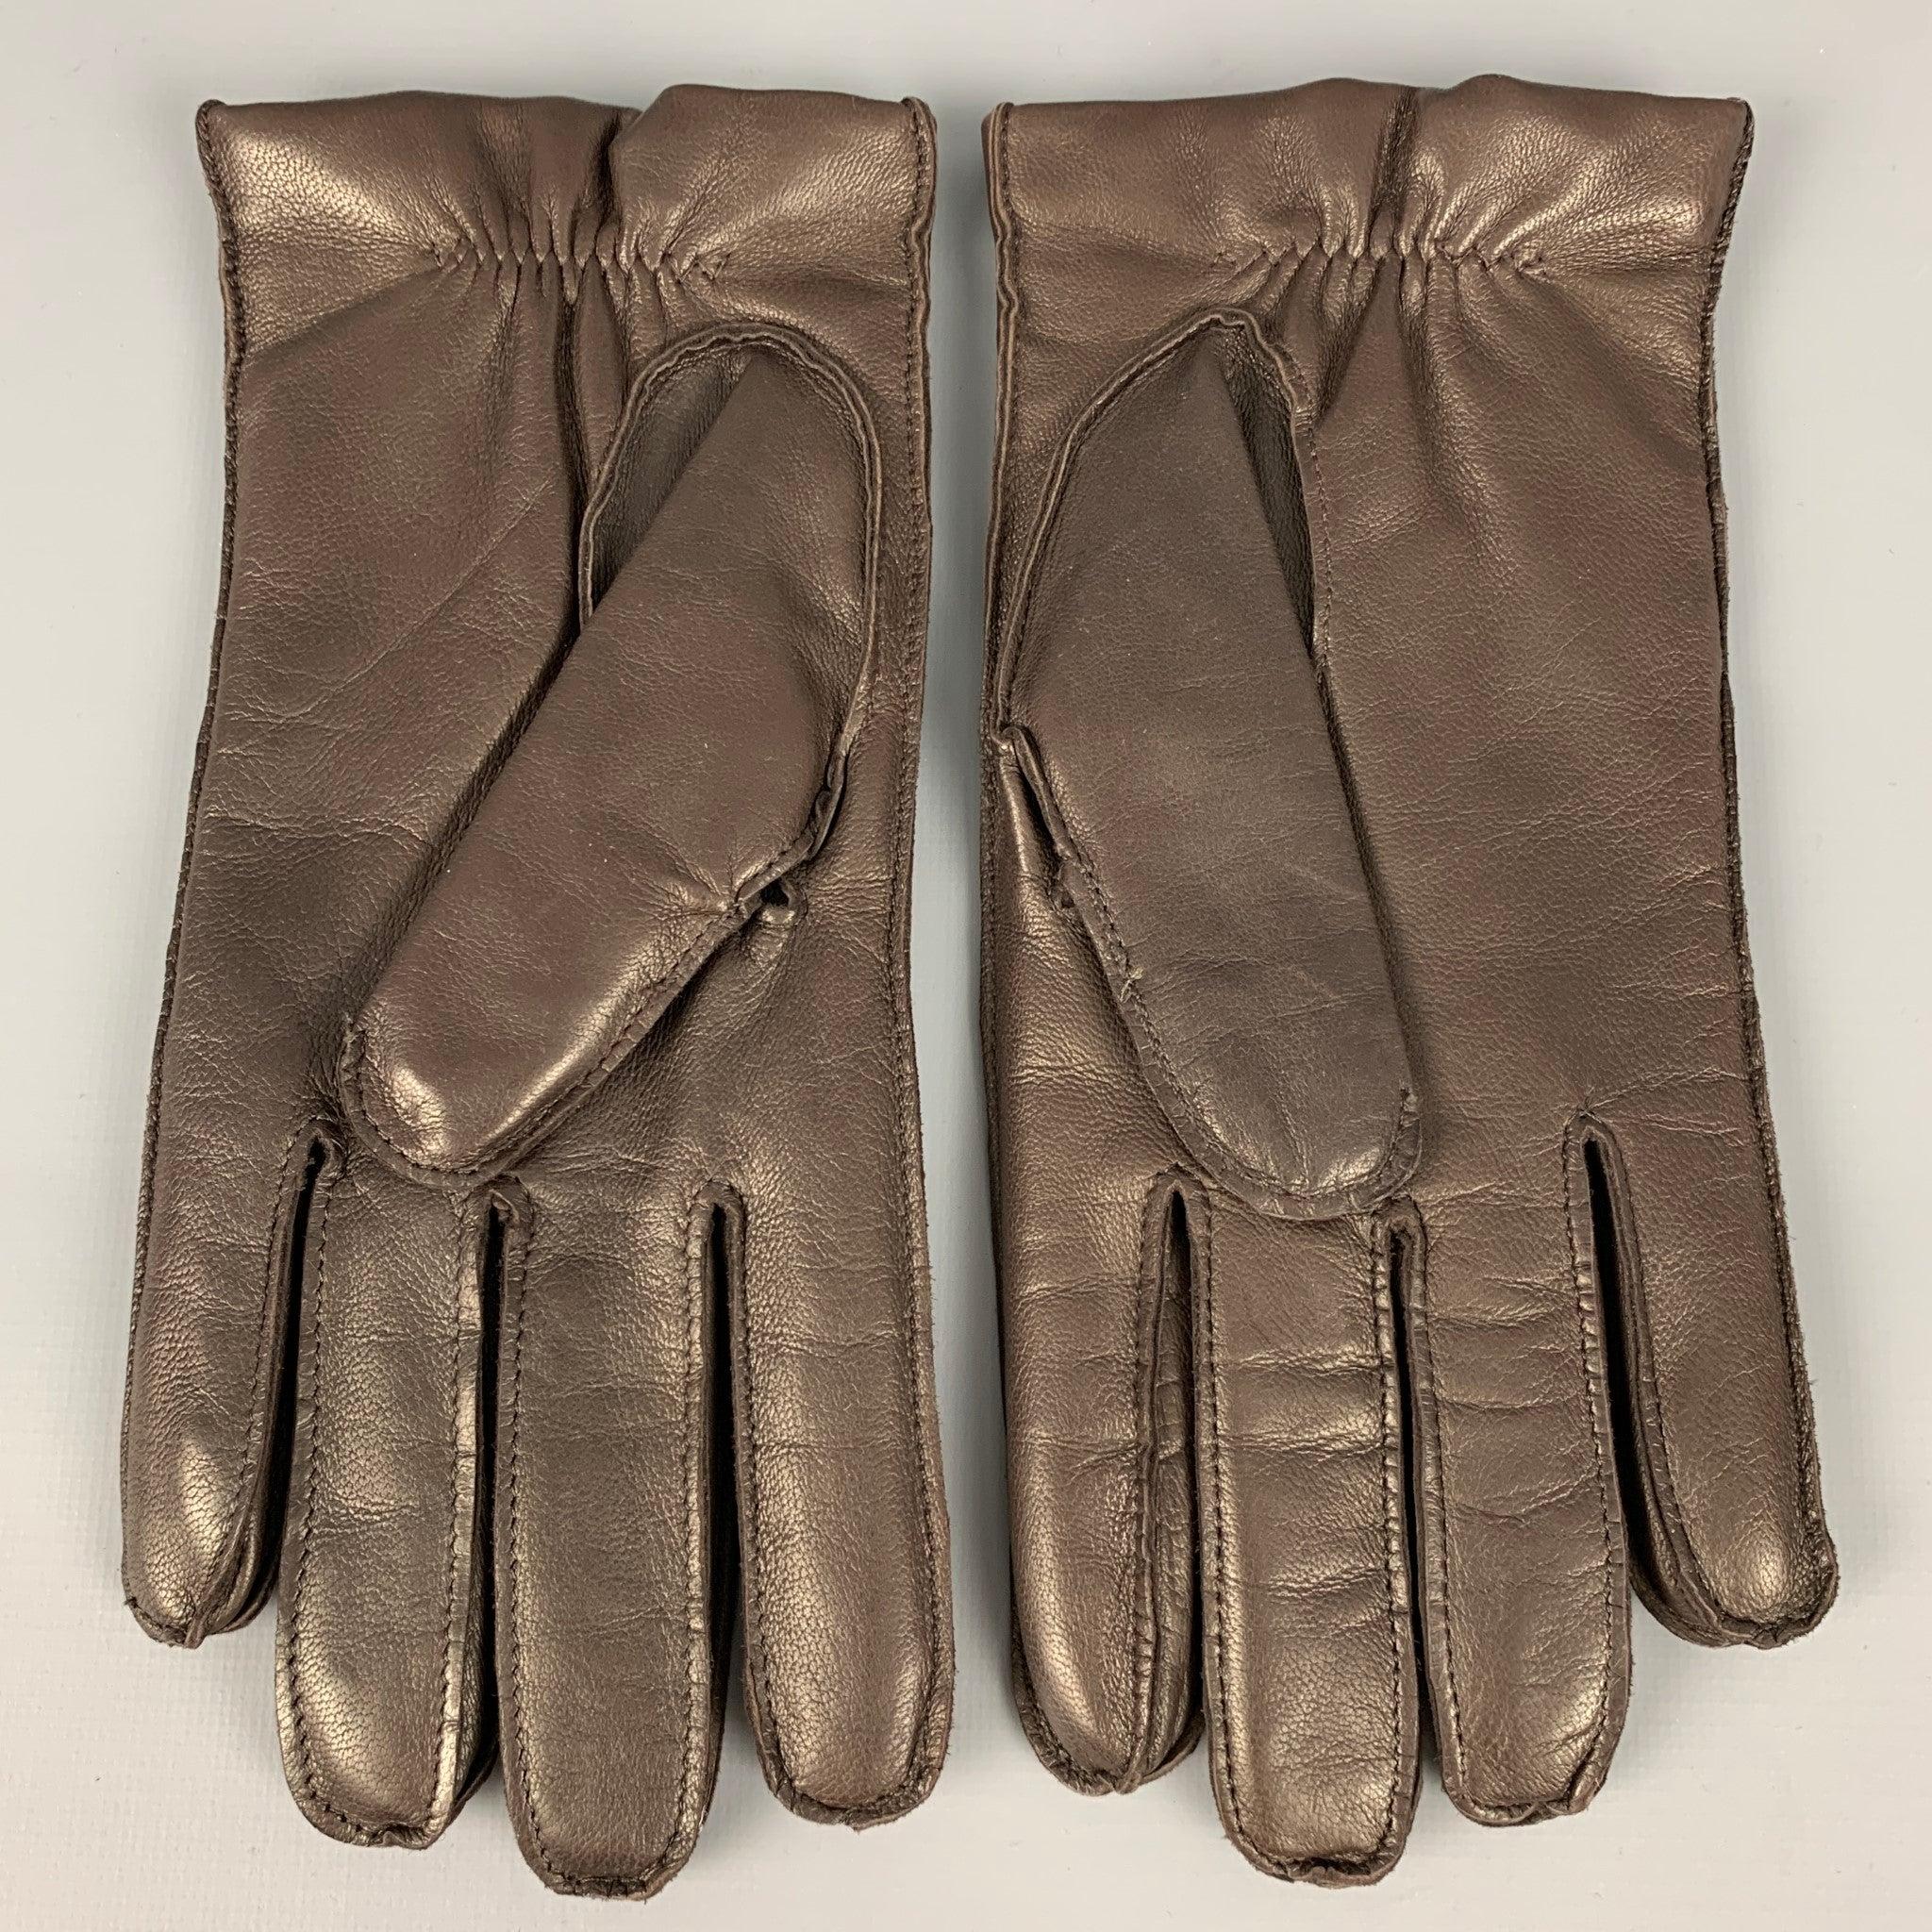 PURPLE LABEL von RALPH LAUREN
Handschuhe aus braunem Leder mit Kaschmirfutter. Made in Italy Ausgezeichneter Pre-Owned Zustand. 

Markiert:   9 

Abmessungen: 
  Breite: 4 Zoll Länge: 9 Zoll
  
  
 
Sui Generis-Referenz: 125208
Kategorie: